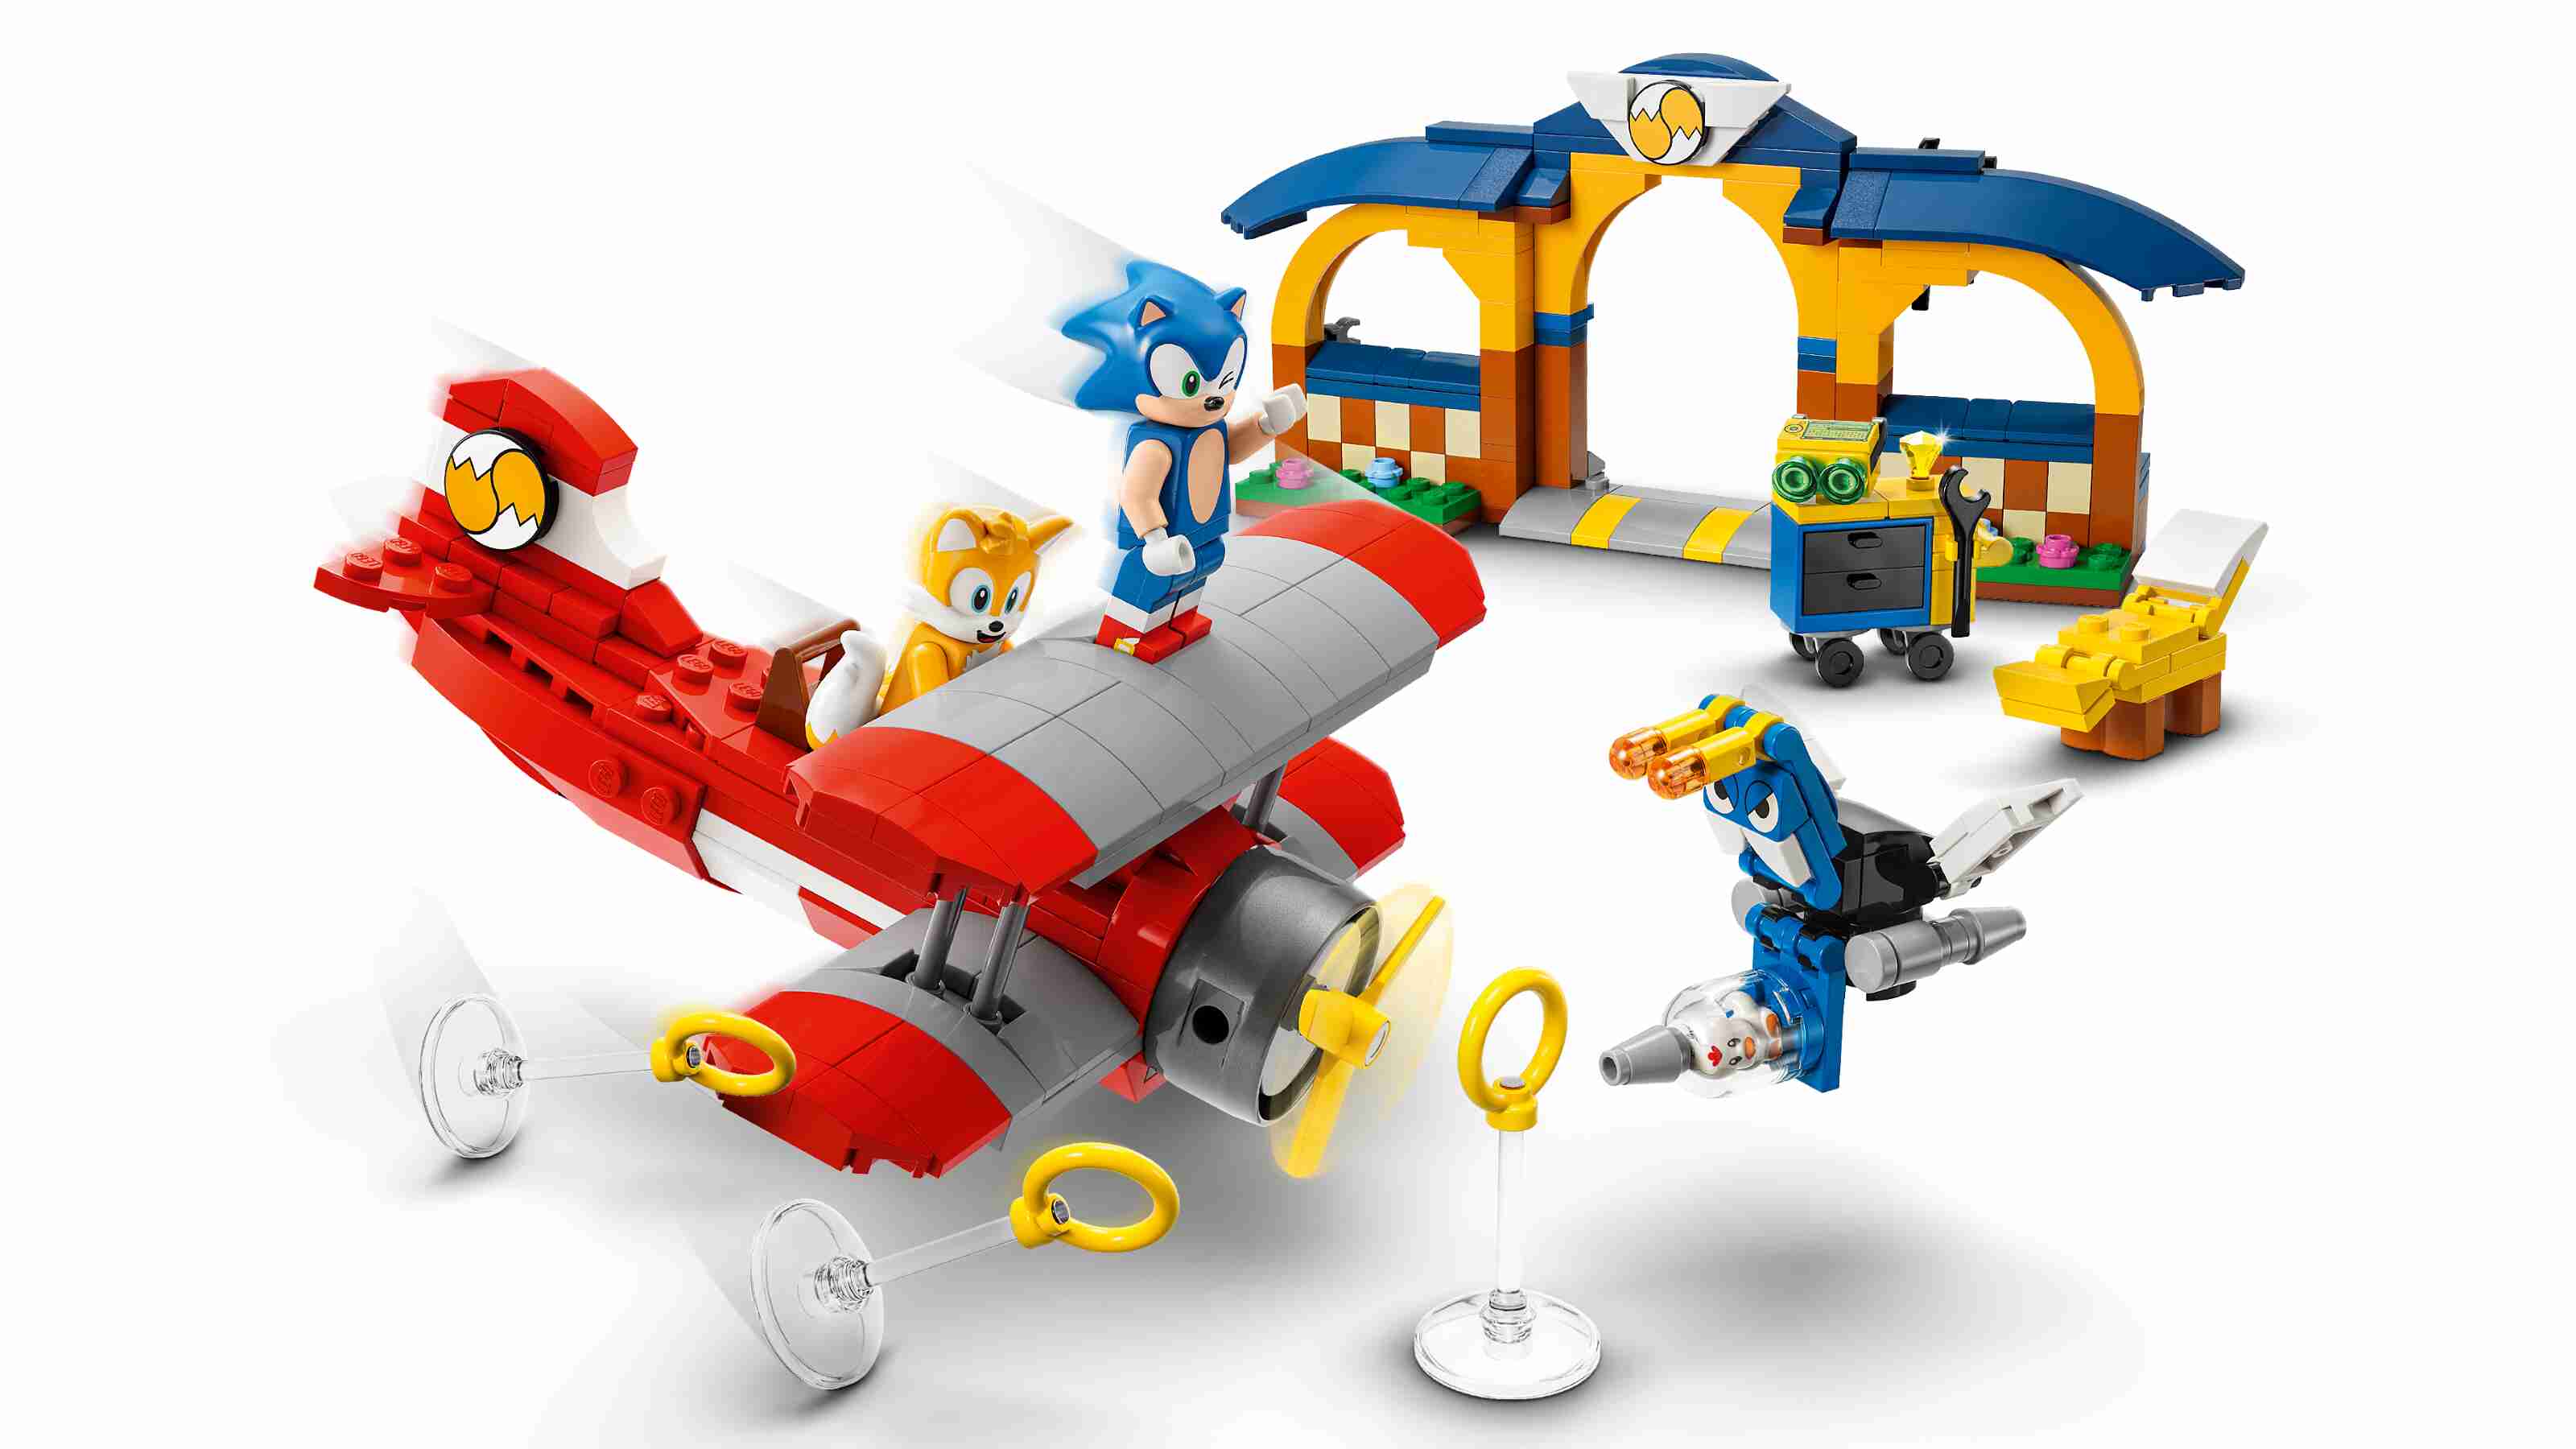 LEGO 76991 Sonic Tails‘ Tornadoflieger mit Werkstatt, 4 Charaktere